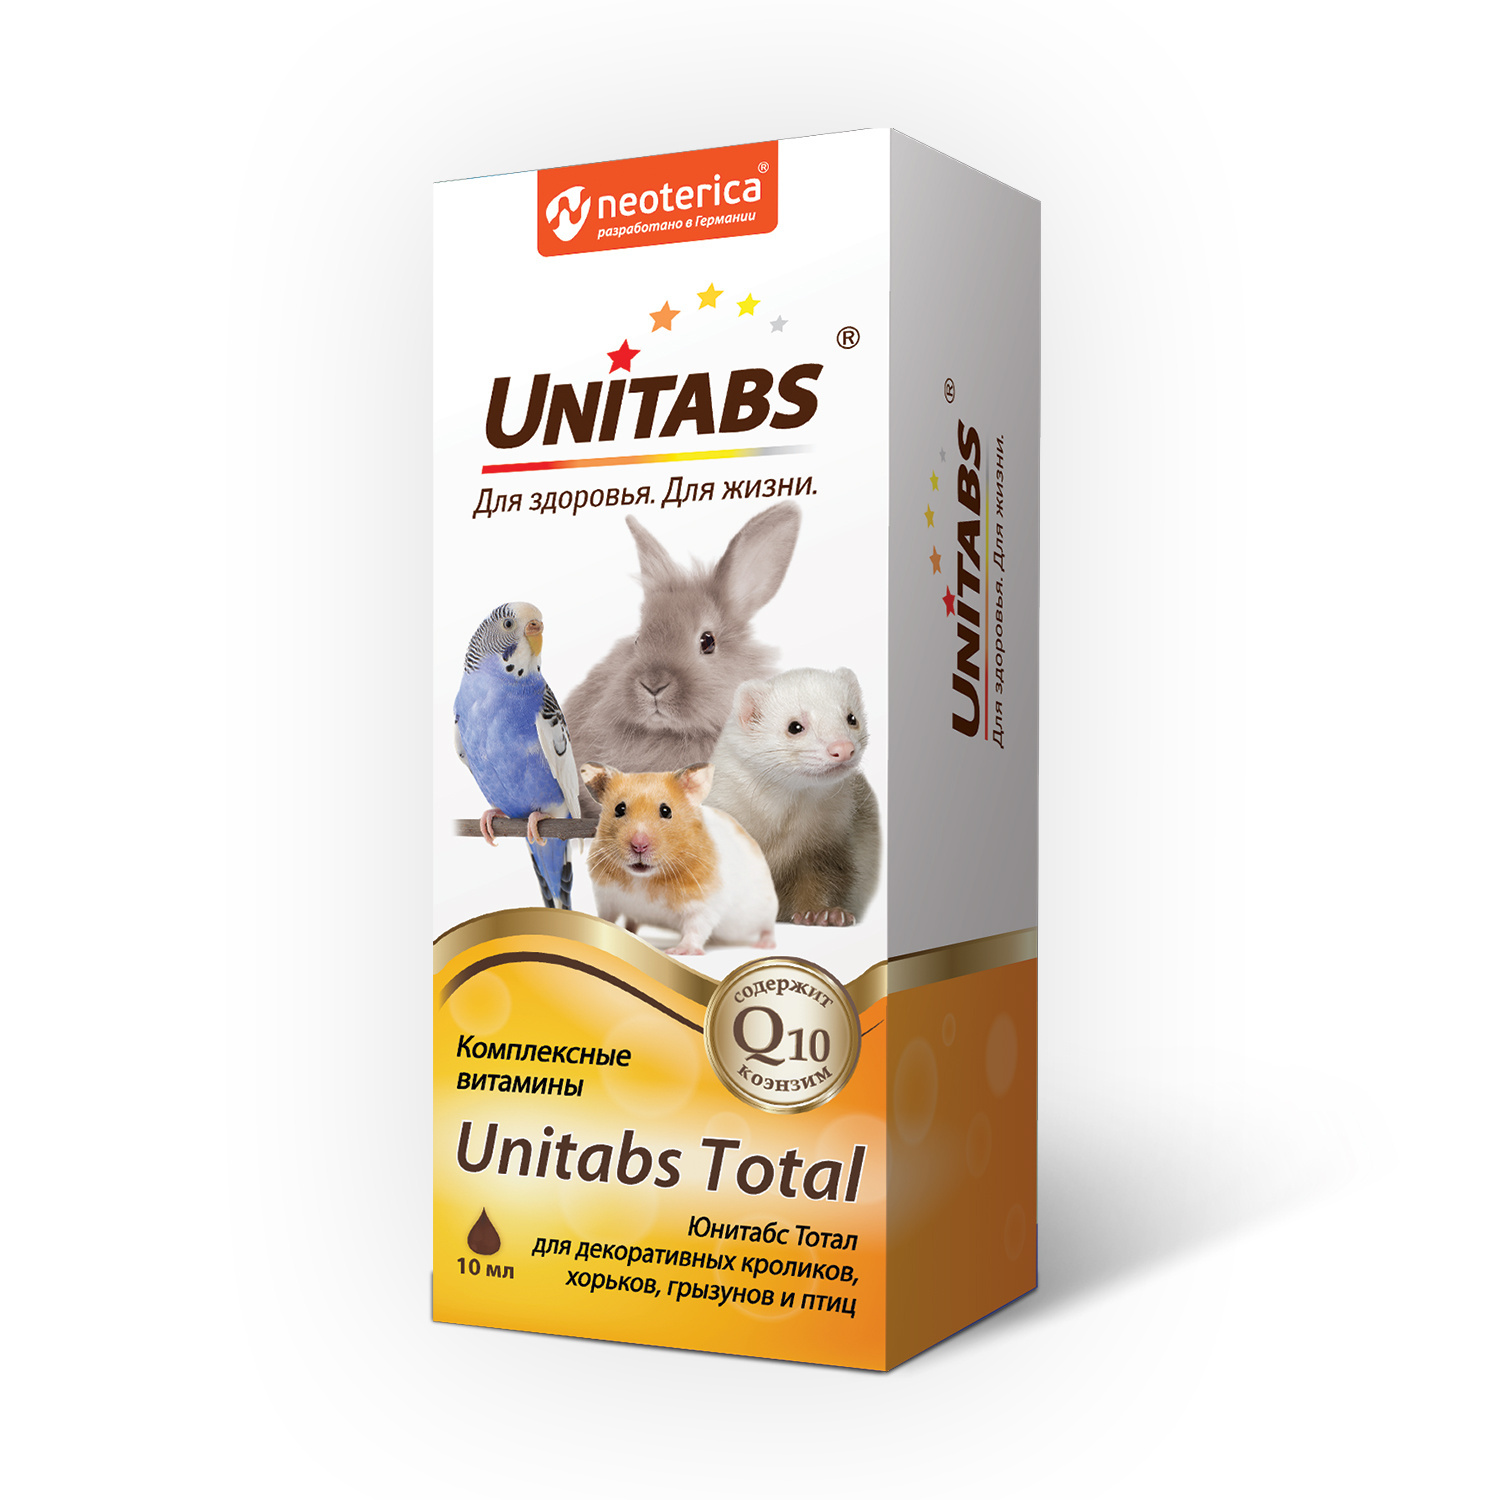 Unitabs витамины для кроликов, птиц и грызунов, 10 мл (45 г) Unitabs витамины для кроликов, птиц и грызунов, 10 мл (45 г) - фото 1